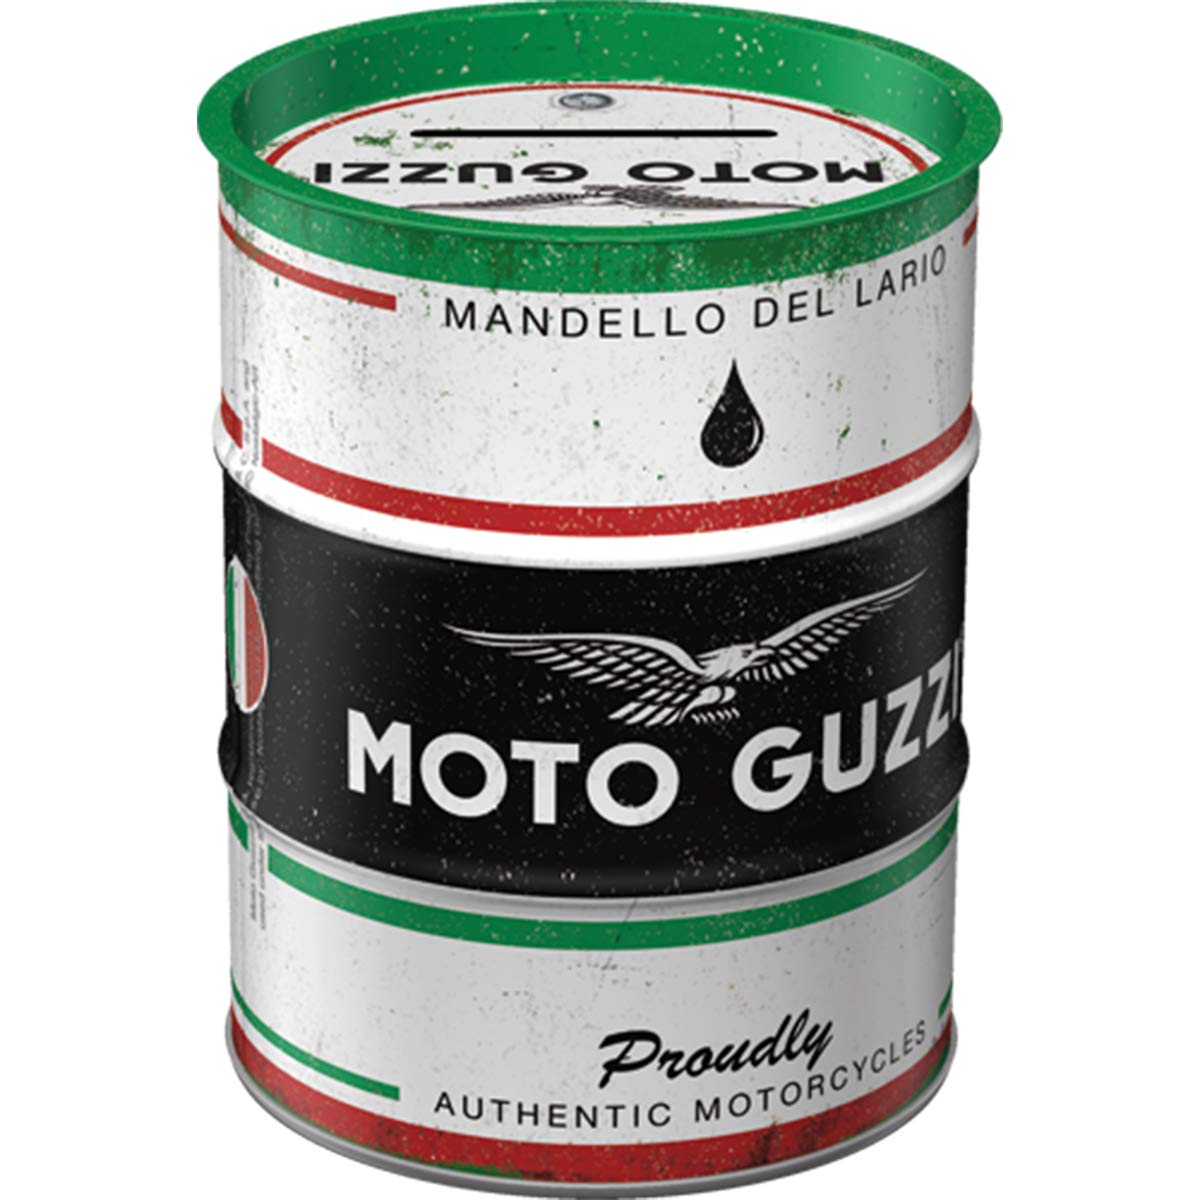 Outlet Shop  Nostalgic-Art Tirelire rétro Baril de pétrole, Moto Guzzi – Italian Oil – Idée de Cadeau pour Fans de Moto, en métal, Tire-Lire en Fer-Blanc, 600 ML 6kLHILxku tout pour vous